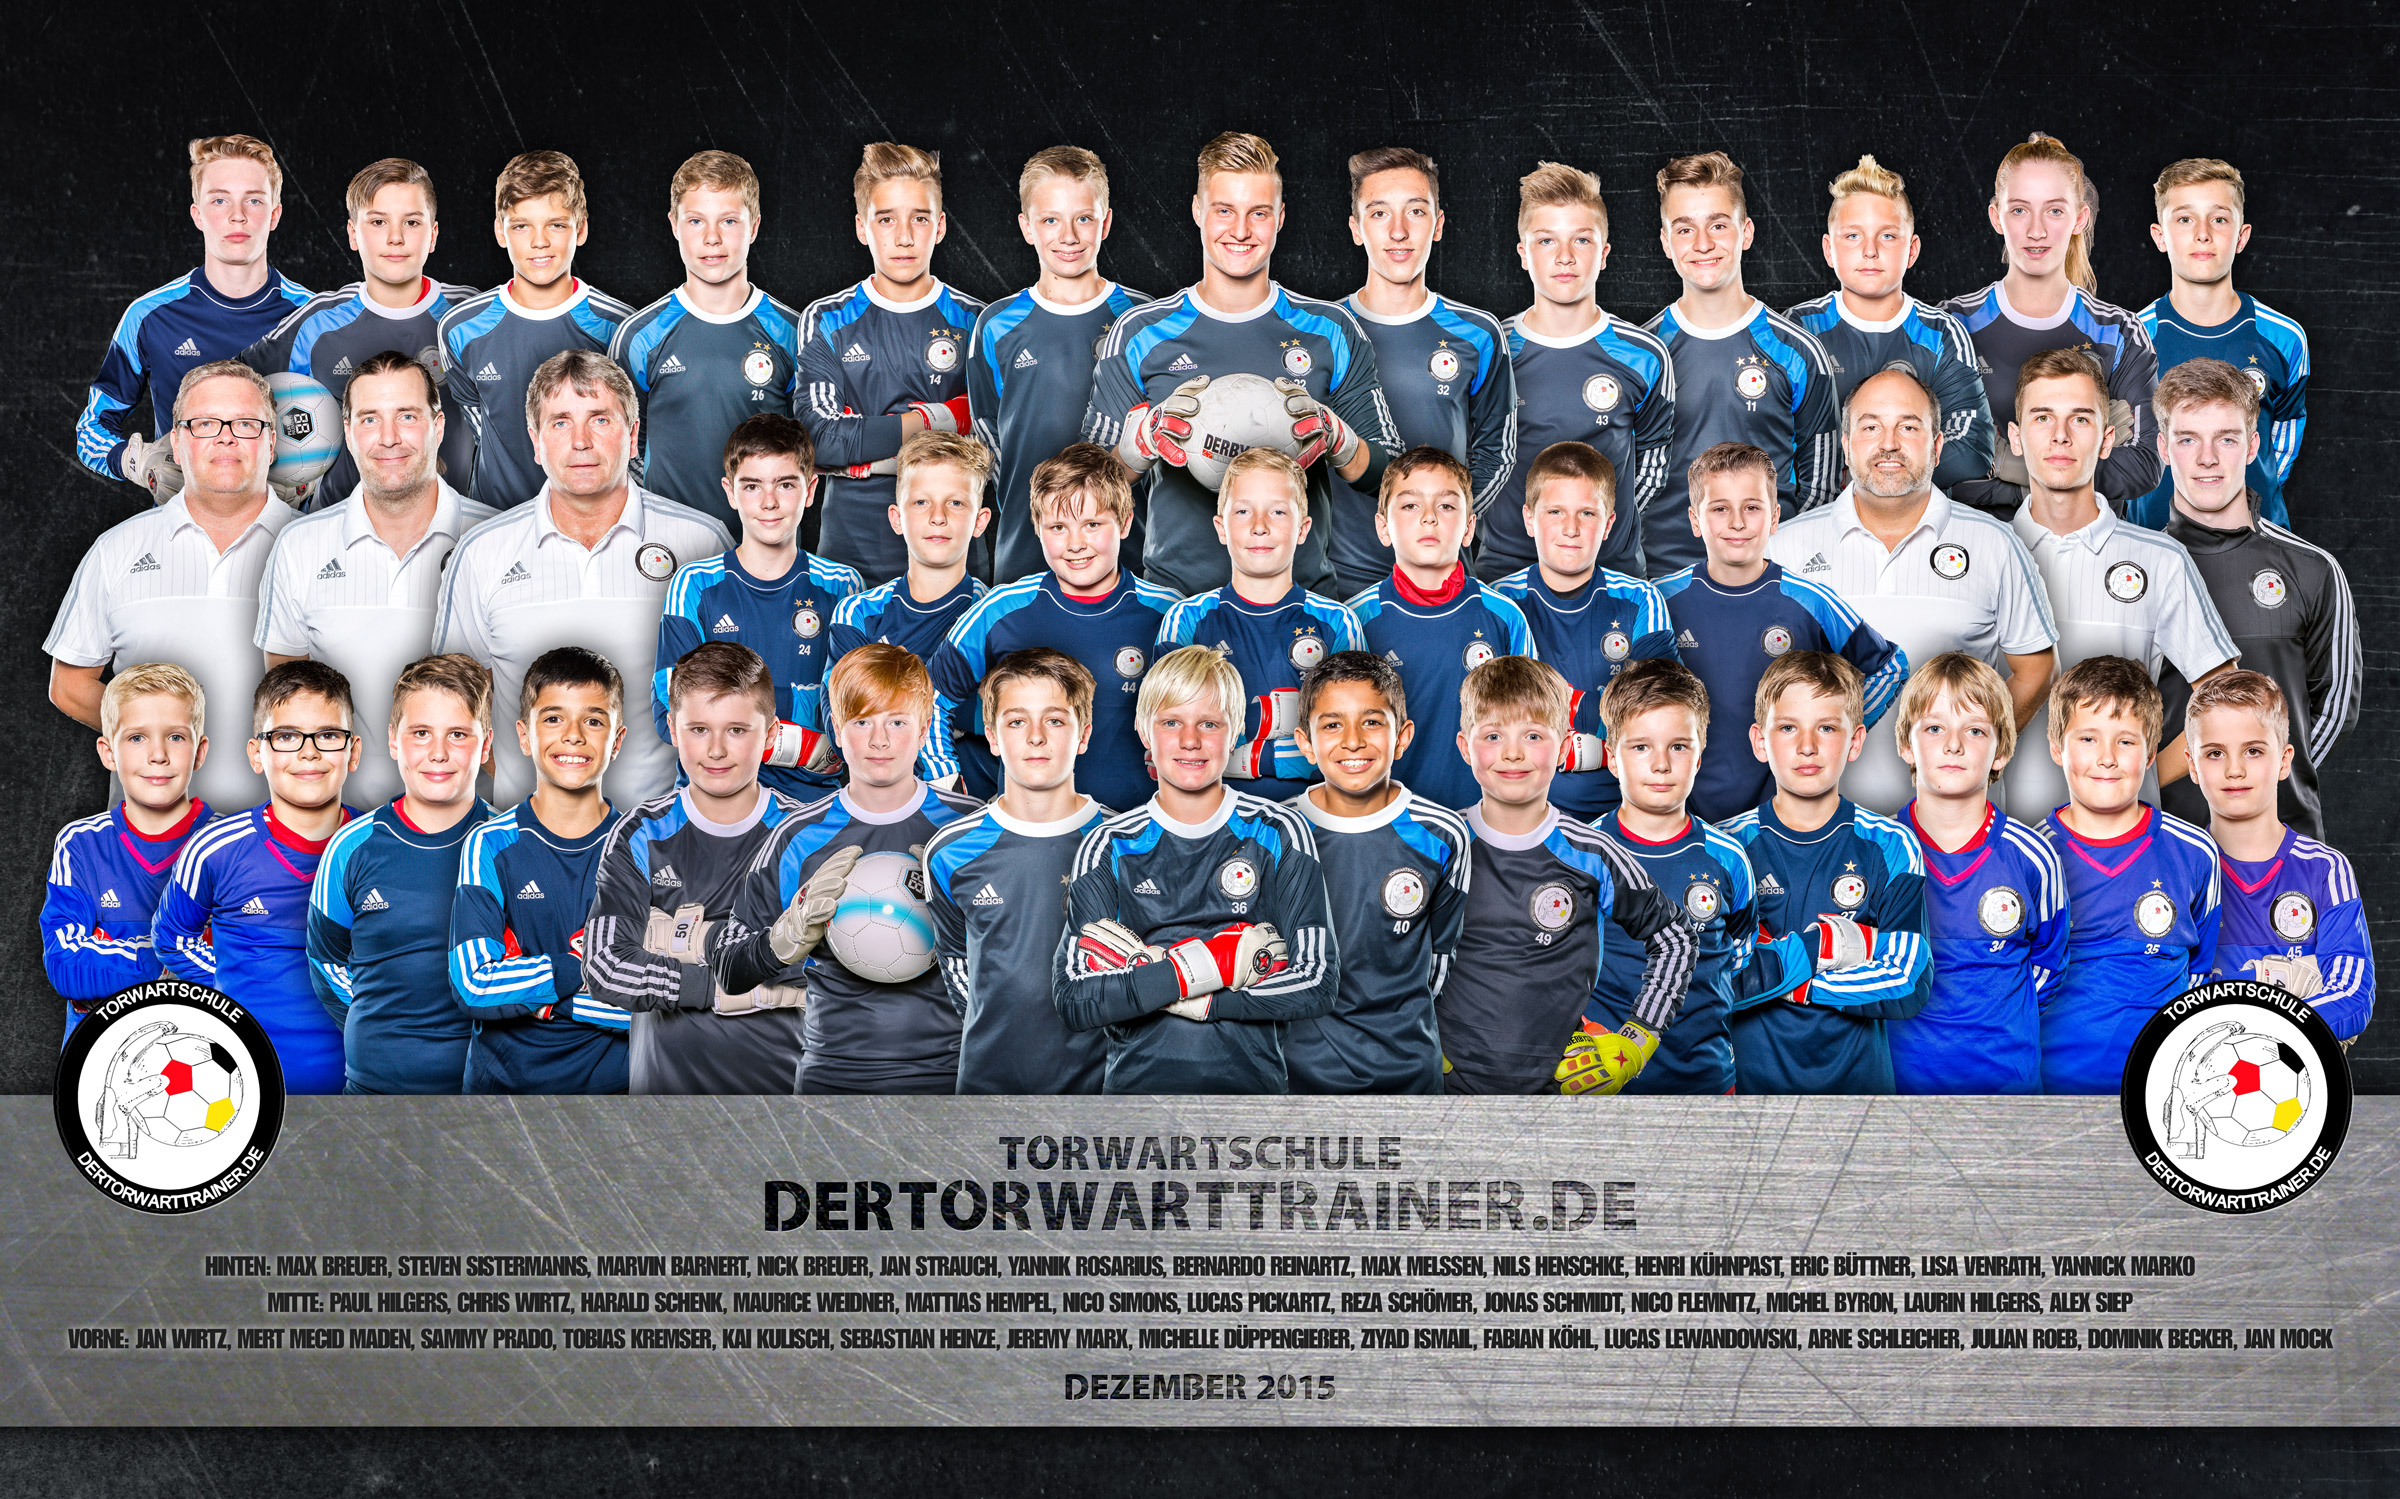 Torwartschule Fußball Mannschaftsfoto dertorwartrainer.de